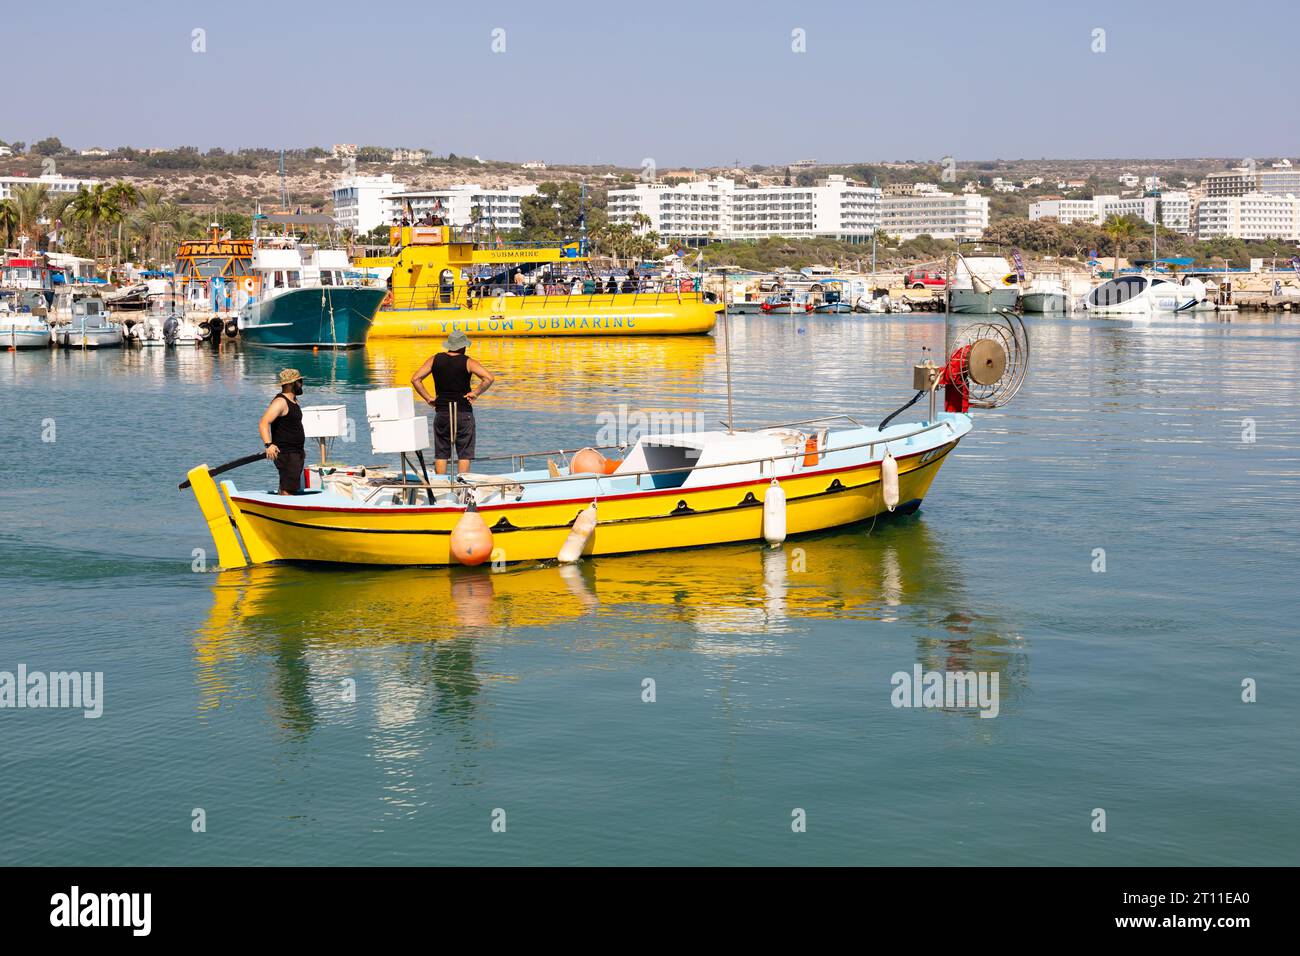 Les pêcheurs sont partis du port d'Ayia Napa dans un bateau de pêche chypriote traditionnel jaune vif, avec le sous-marin jaune derrière. . Ayia Napa, Chypre Banque D'Images